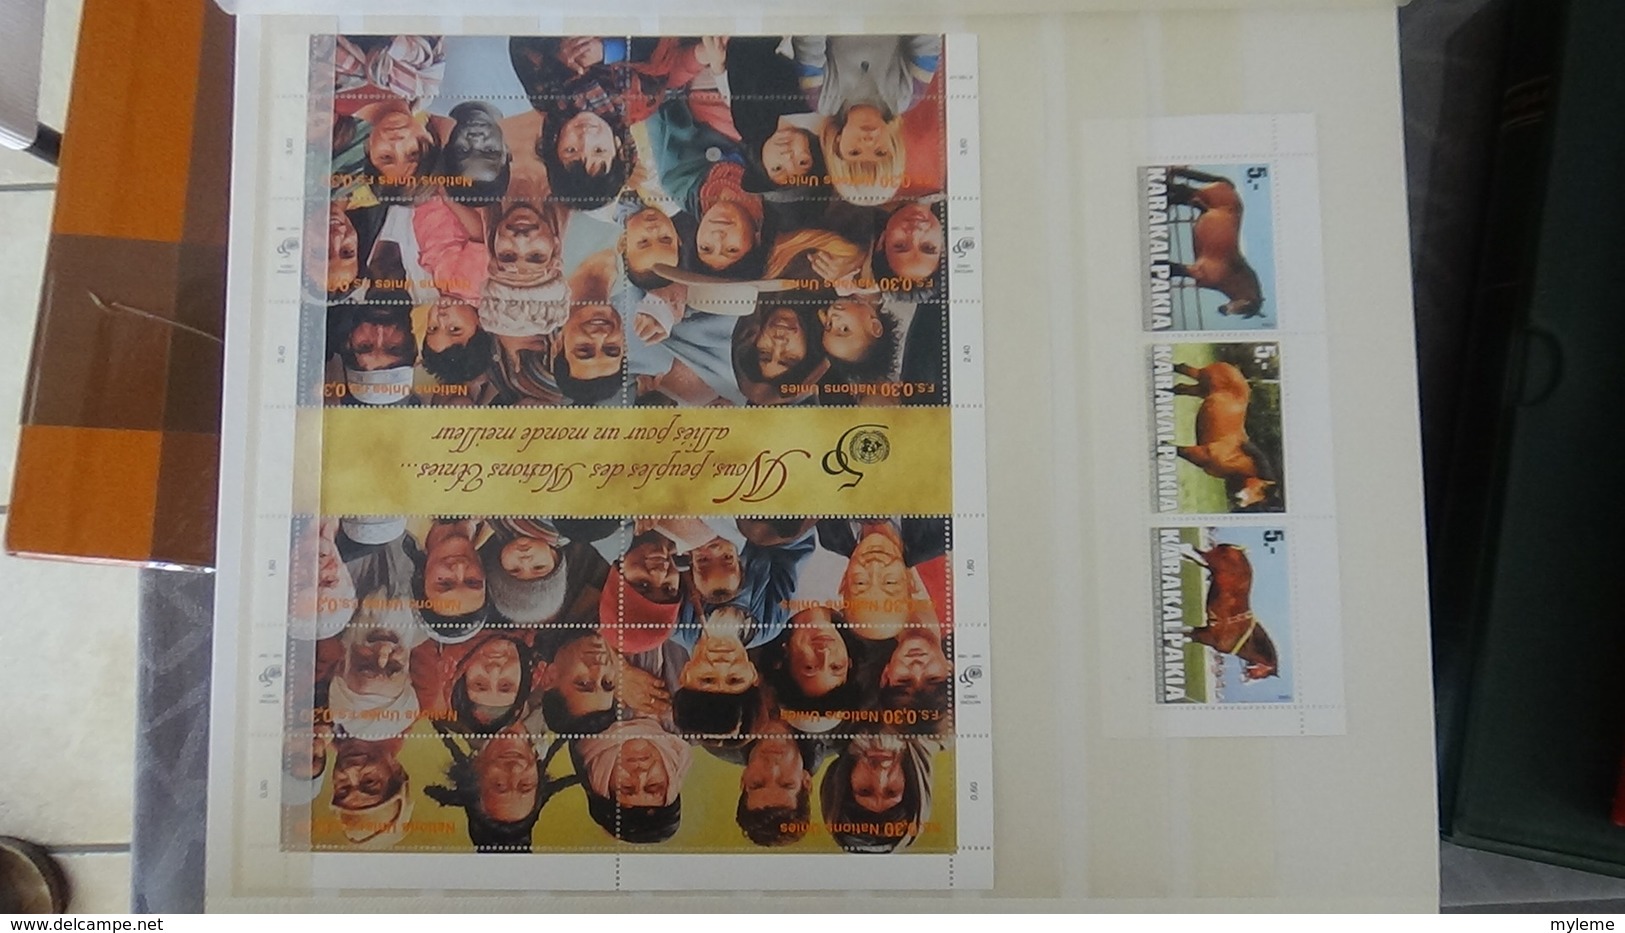 Collection de timbres, blocs (dont 29 carnets ** + 9 pubs ** de Belgique ) ** de divers pays du monde ... Très sympa !!!